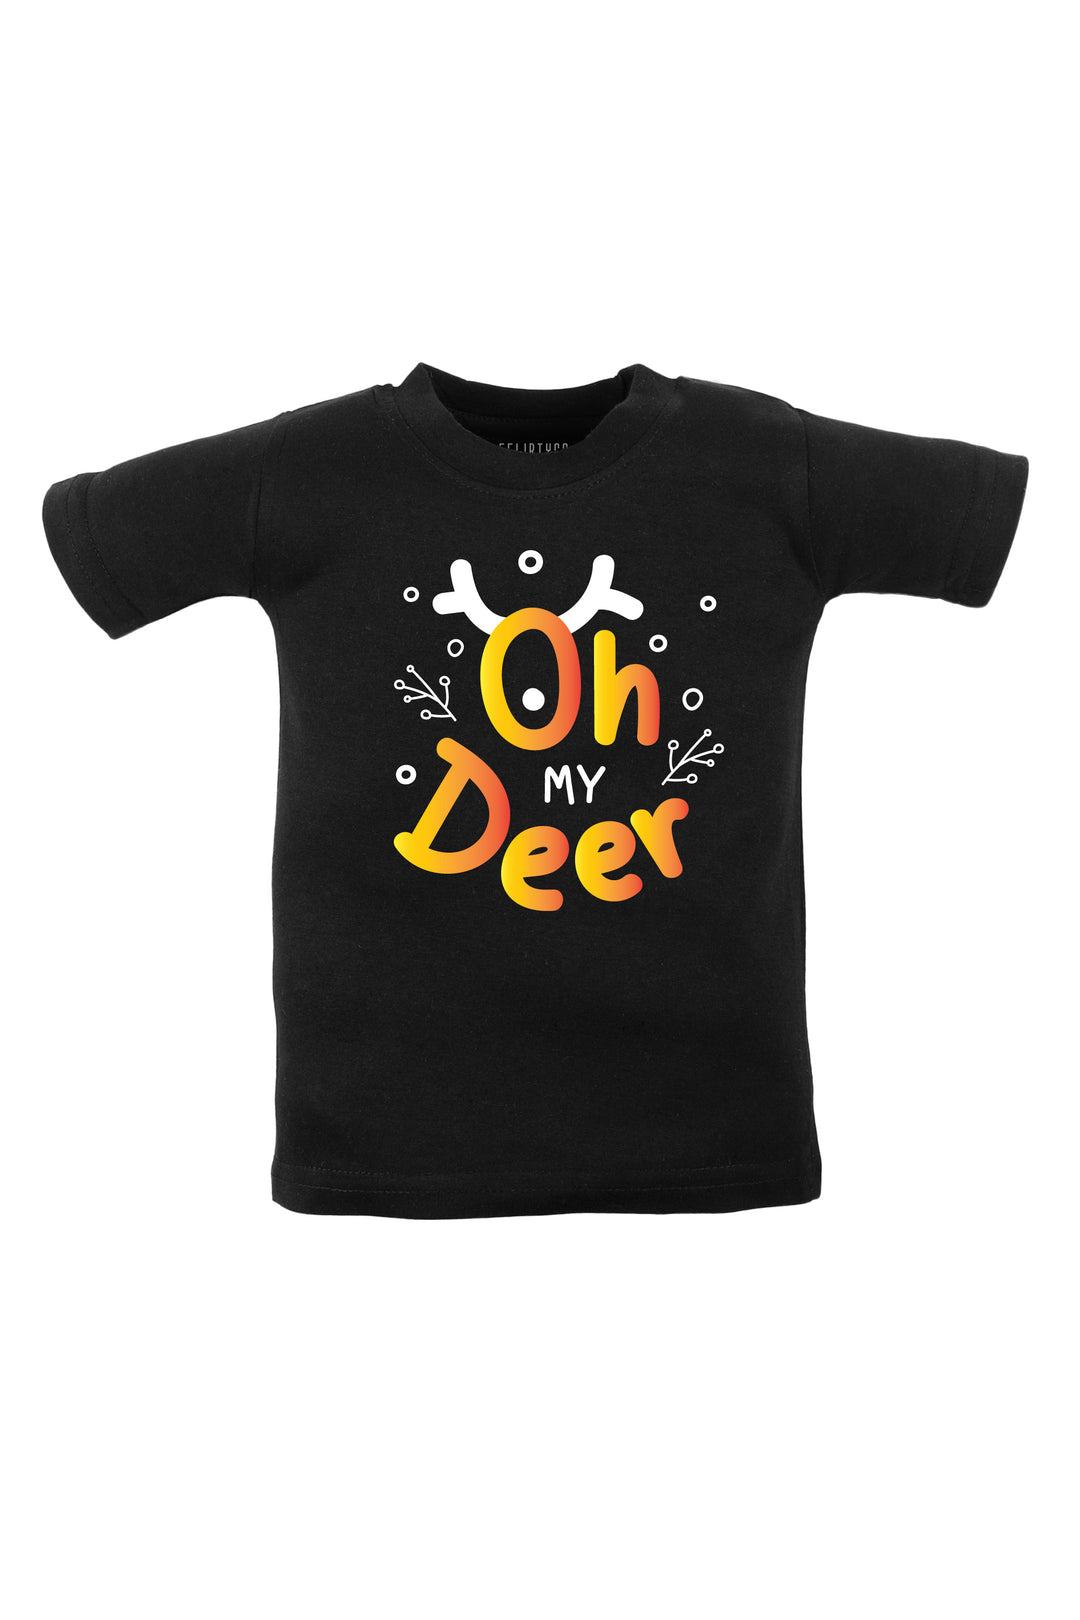 Oh My Deer Kids T Shirt